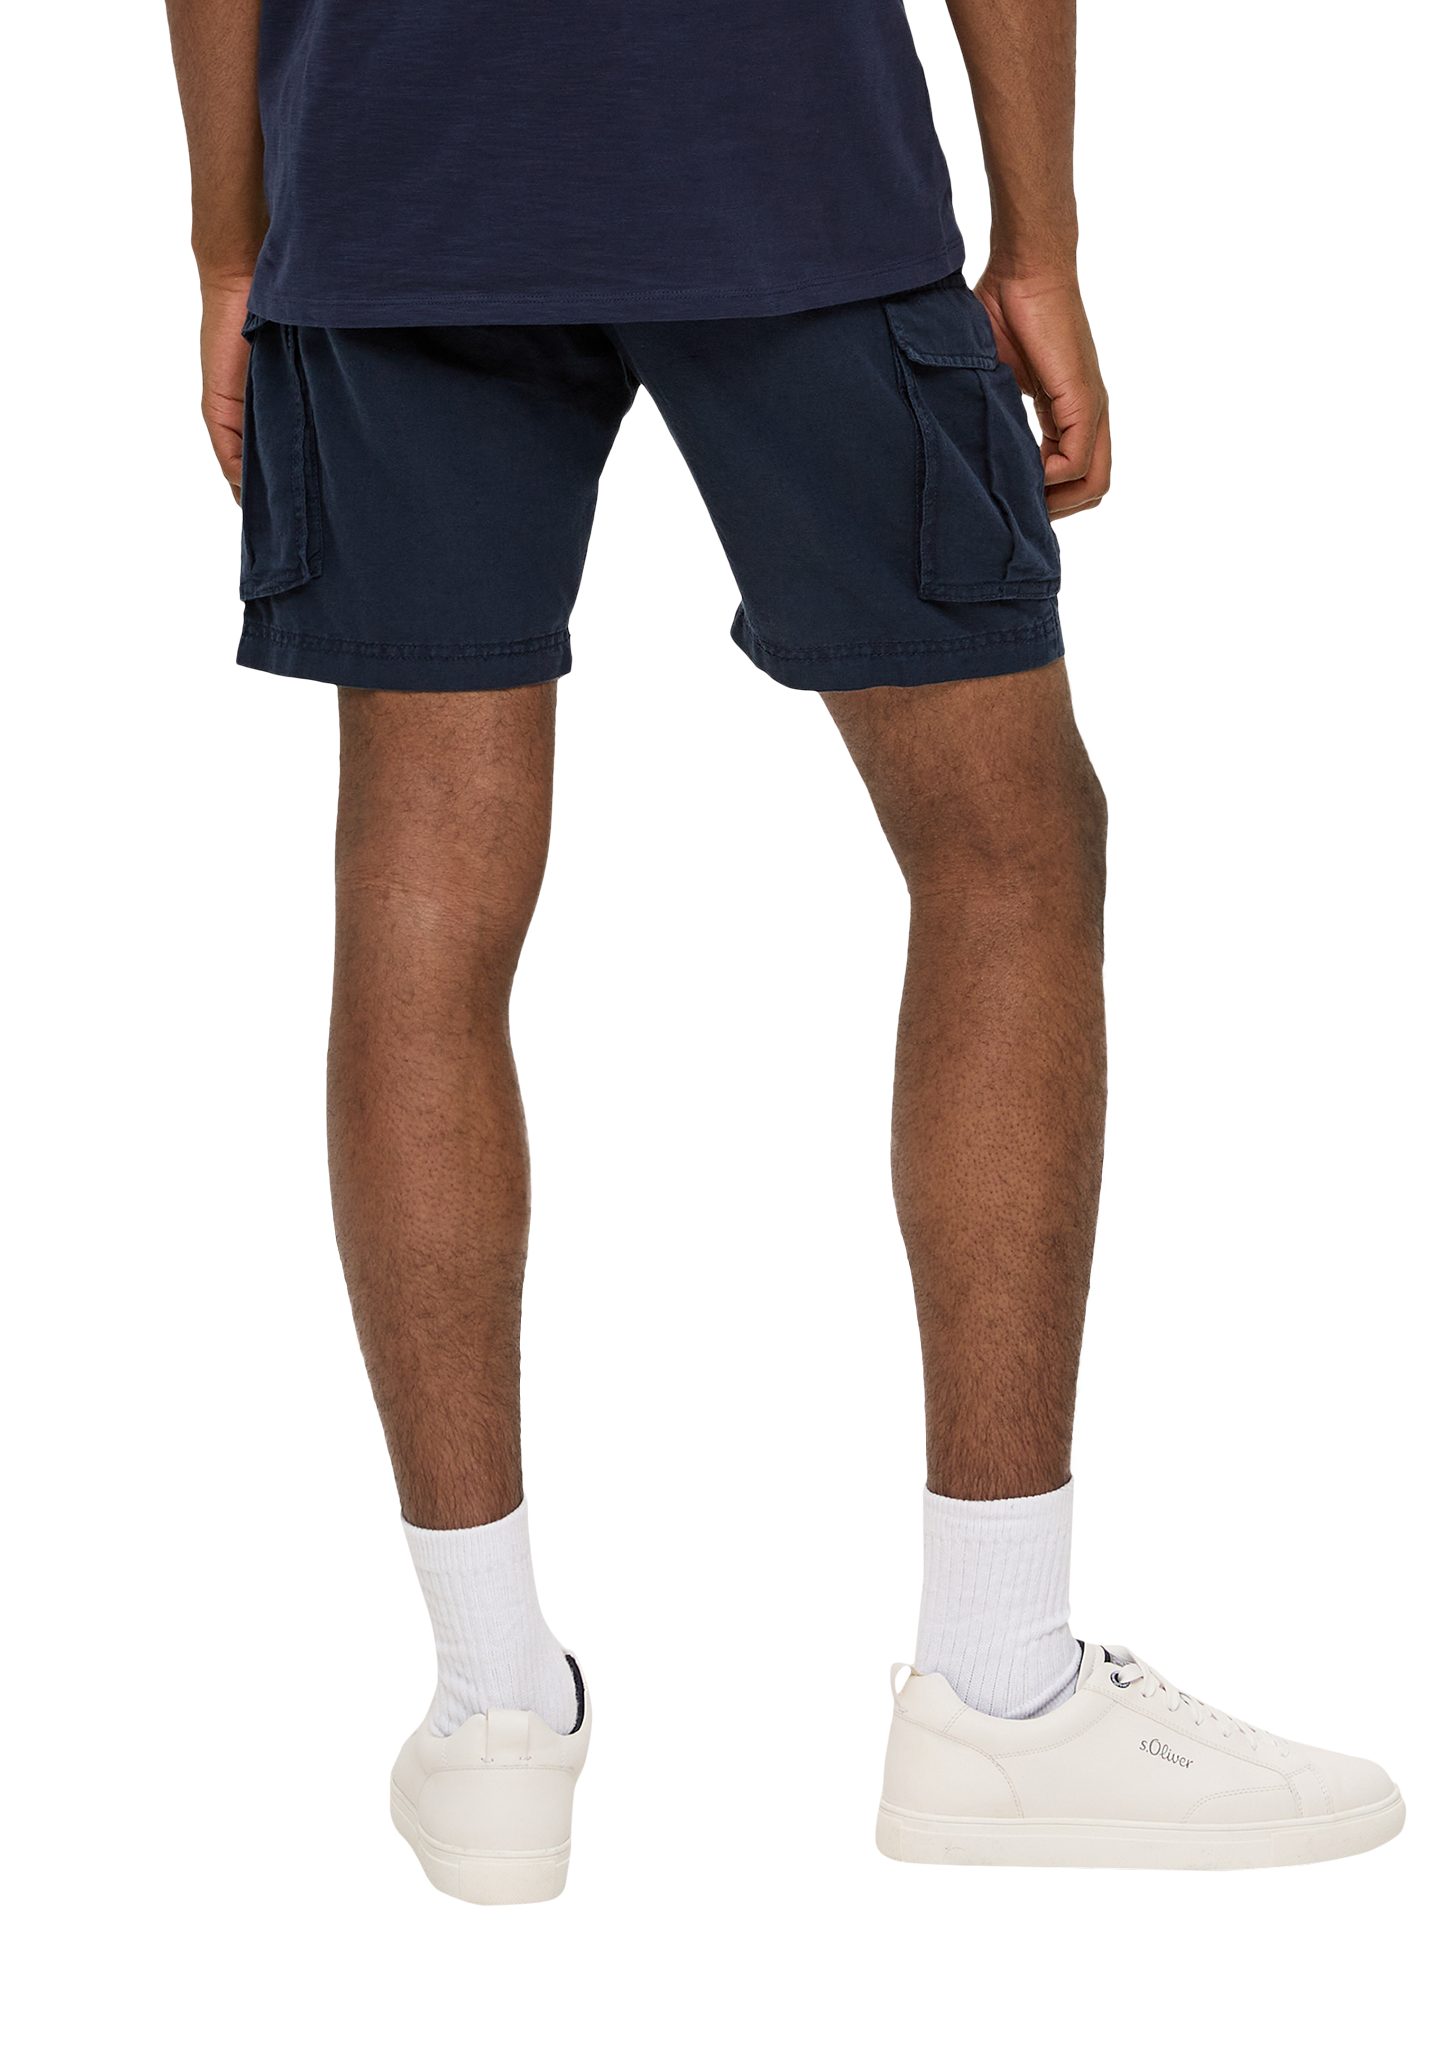 & Hose aus Shorts John: QS und Label-Patch Shorts tiefblau Baumwolle Leinen